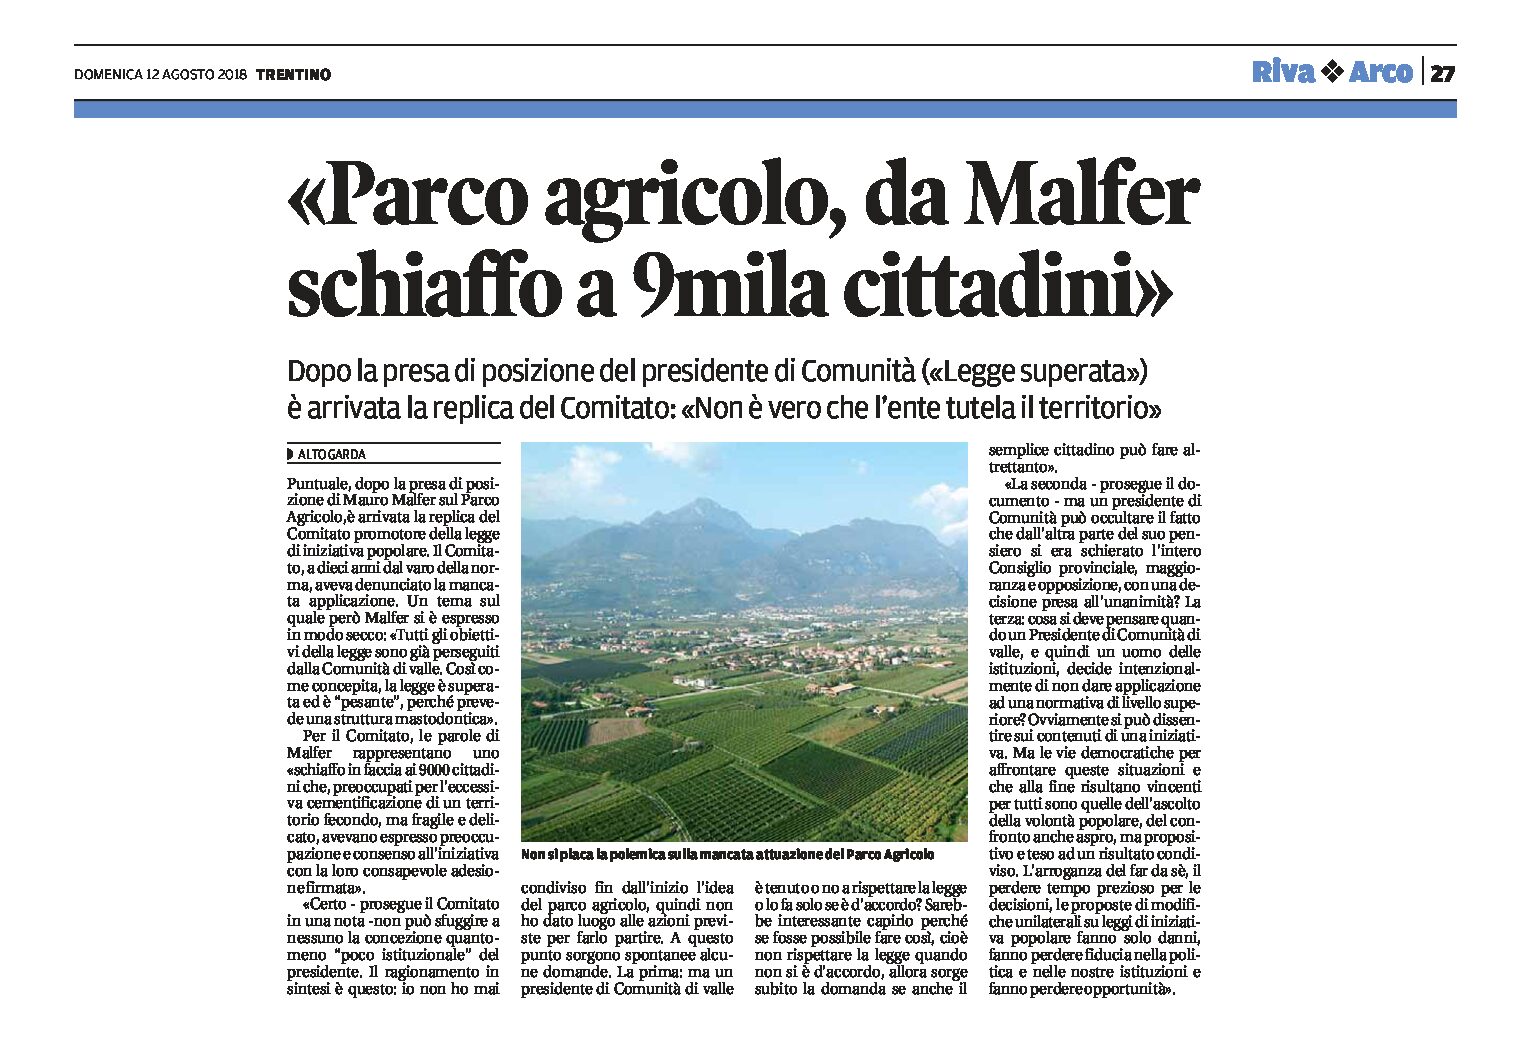 Alto Garda: Parco agricolo, da Malfer schiaffo a 9mila cittadini